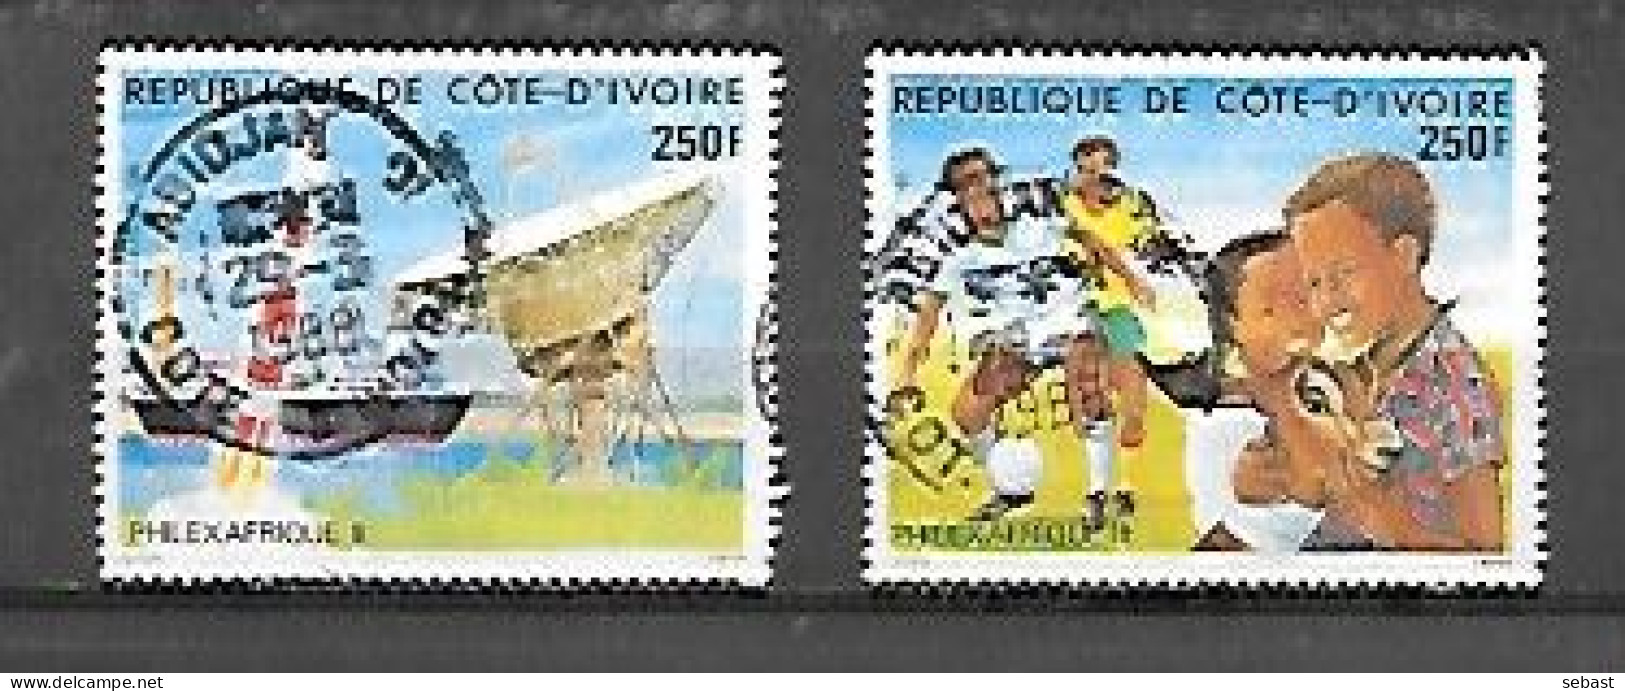 TIMBRE OBLITERE DE COTE D'IVOIRE DE 1985 N° MICHEL 878/79 - Ivory Coast (1960-...)